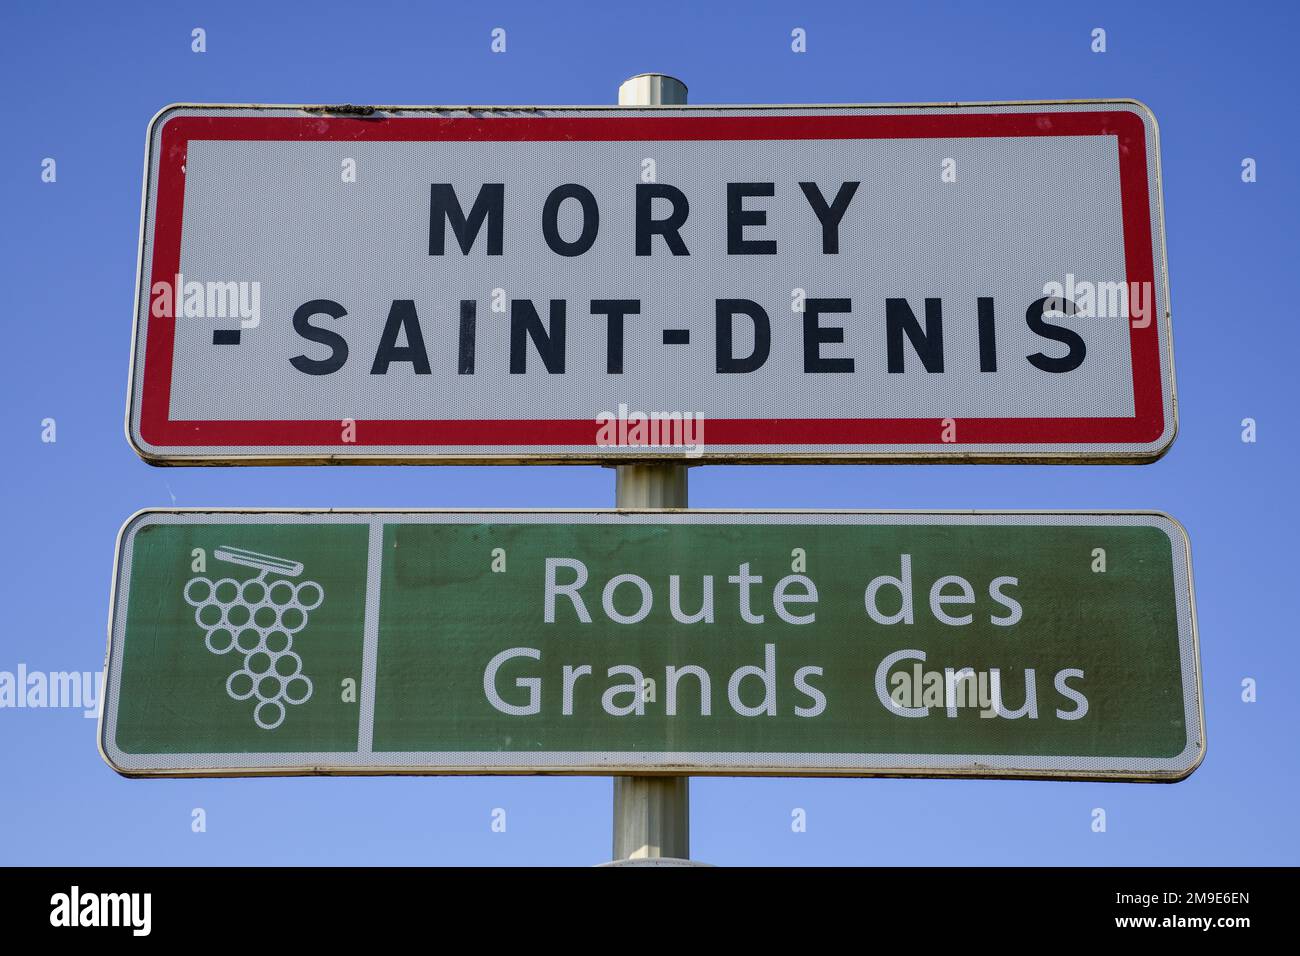 Ville de Morey-Saint-Denis sur la route des Grands-crus, route des vins fins, département Côte-Dor, Bourgogne-Franche-Comté, Bourgogne, France Banque D'Images